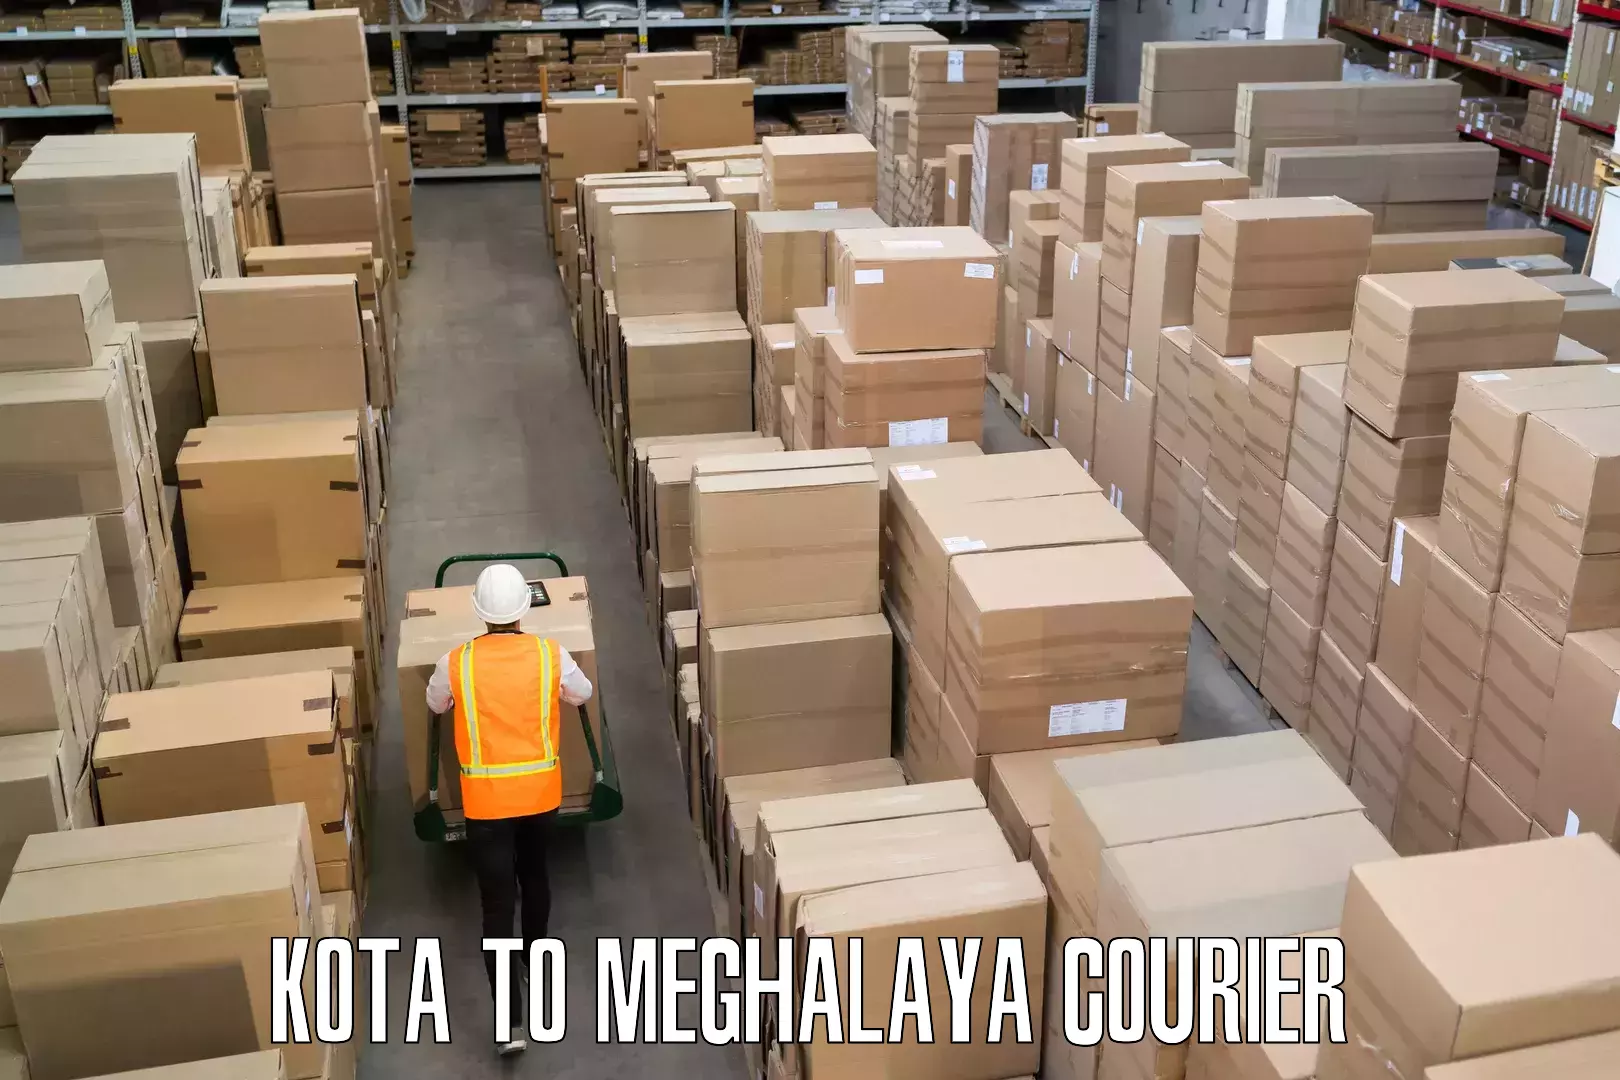 Luggage delivery network Kota to Meghalaya